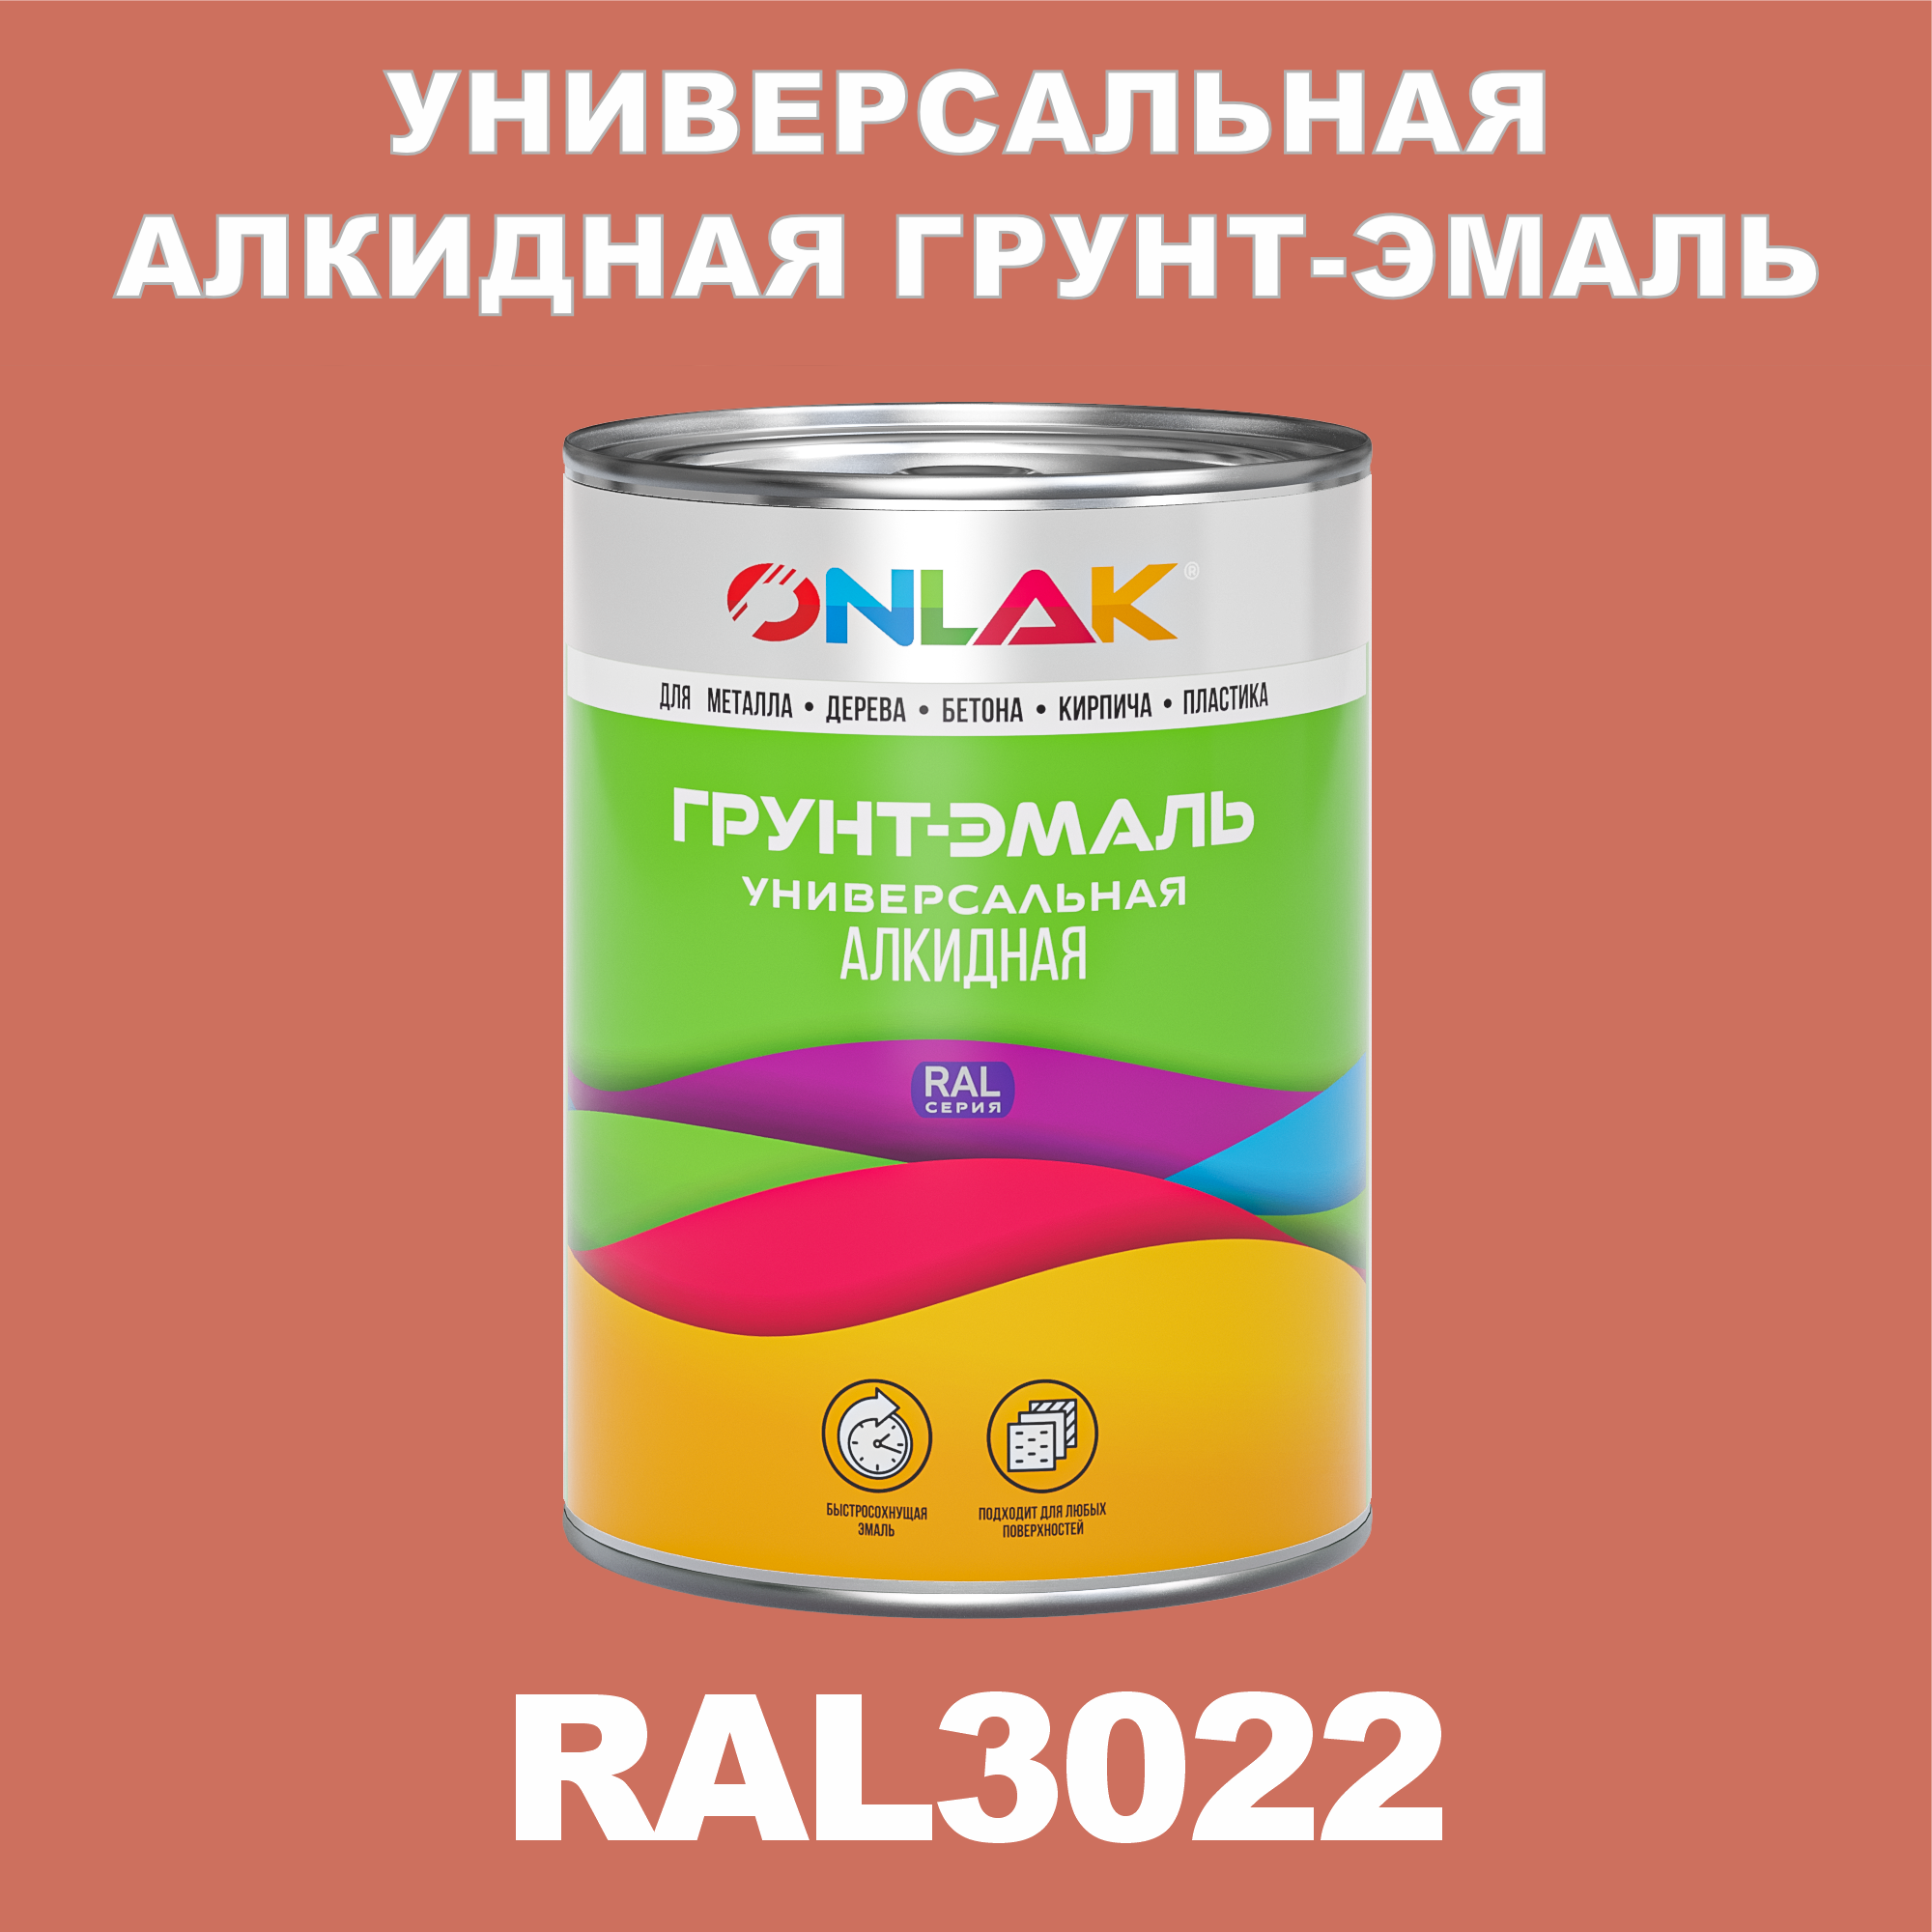 Грунт-эмаль ONLAK 1К RAL3022 антикоррозионная алкидная по металлу по ржавчине 1 кг